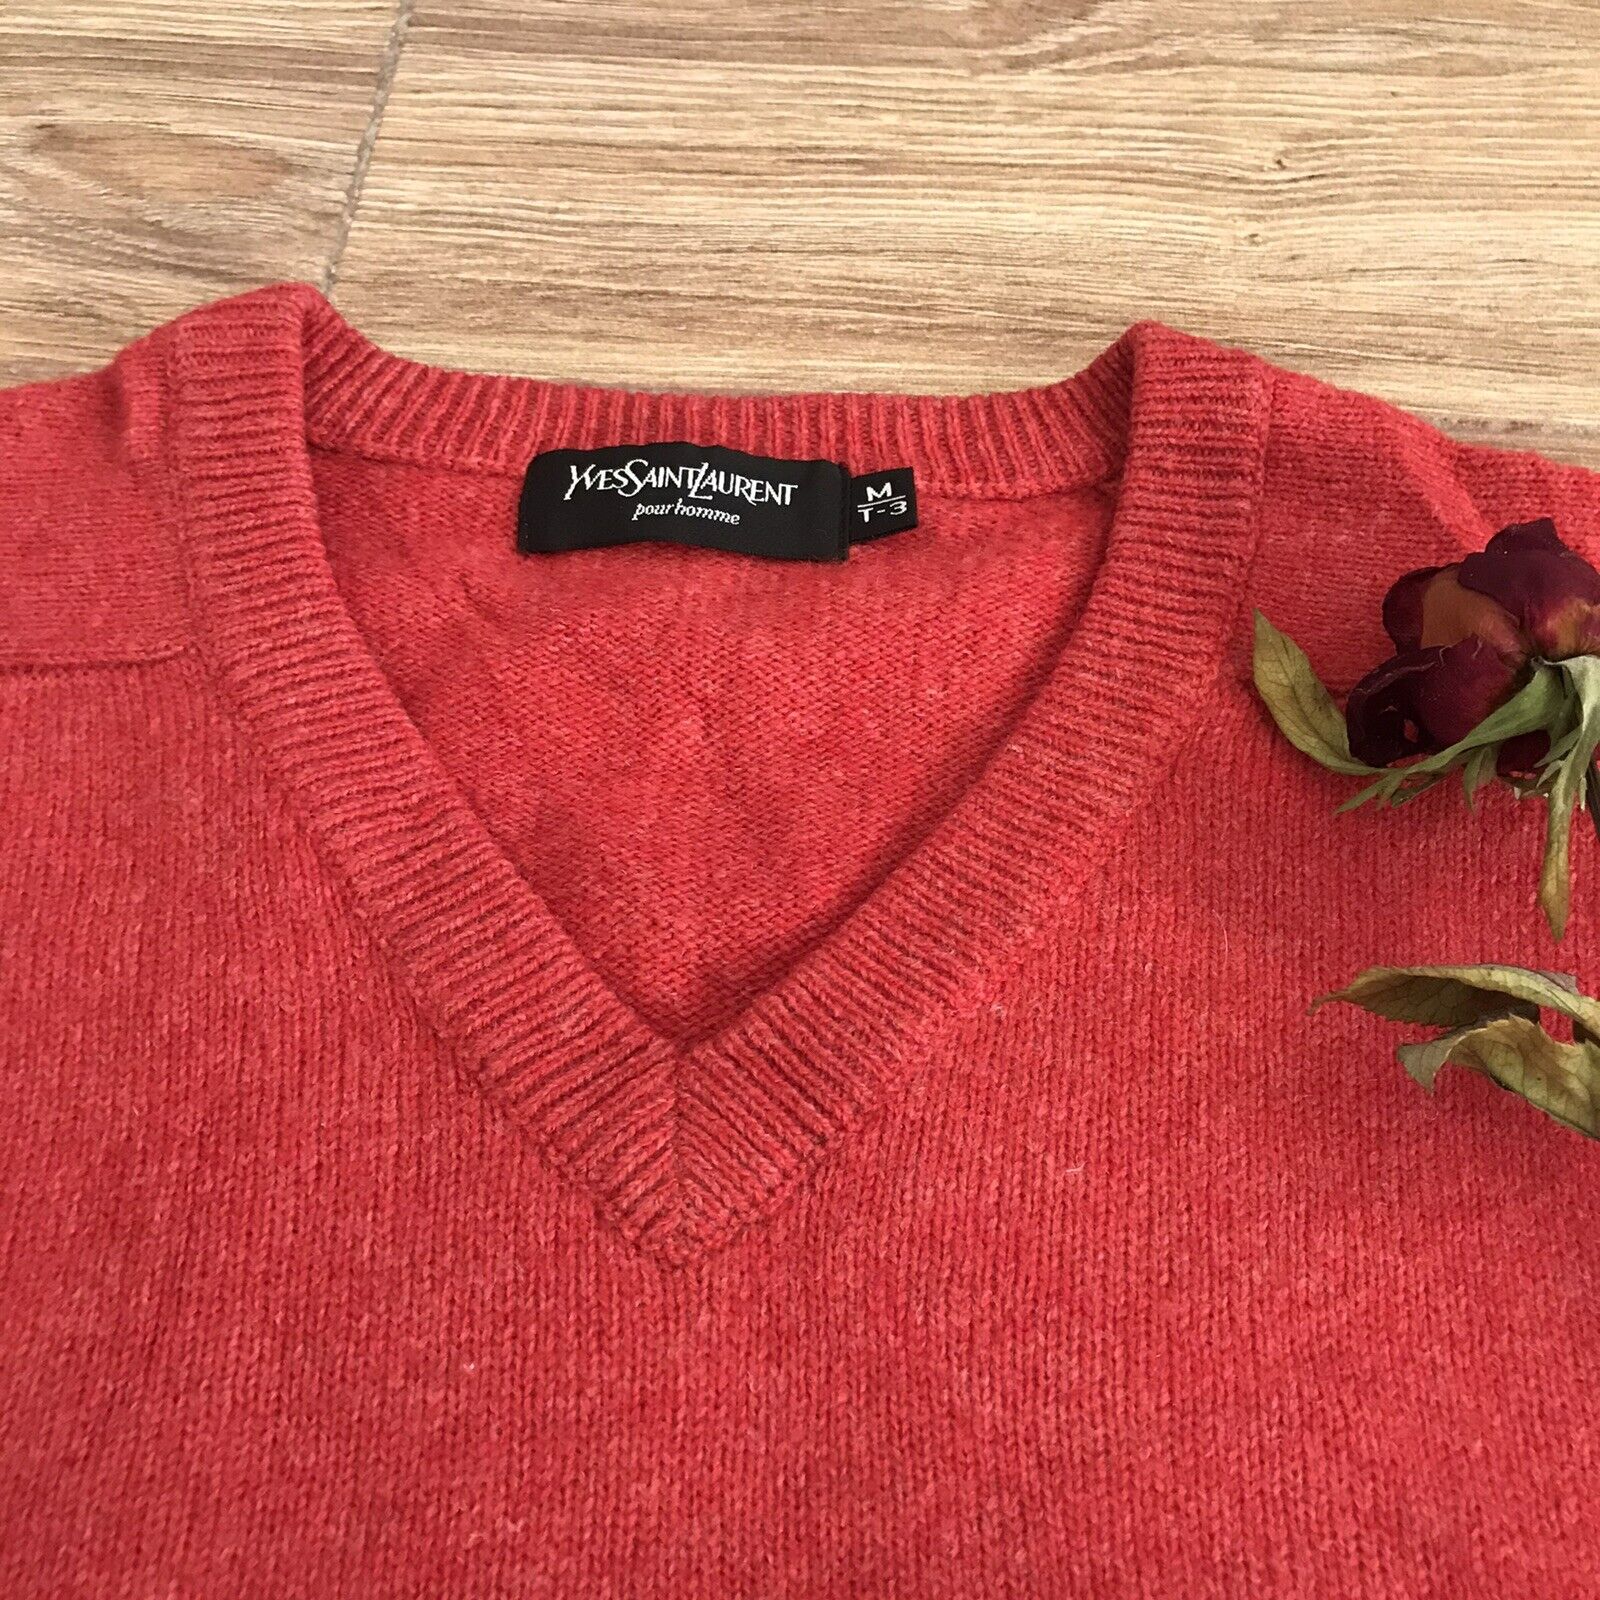 overdrivelse binde Alperne Yves Saint Laurent Sweater YSL Pullover WOOL jumper V neck men's red Size  3/M | eBay